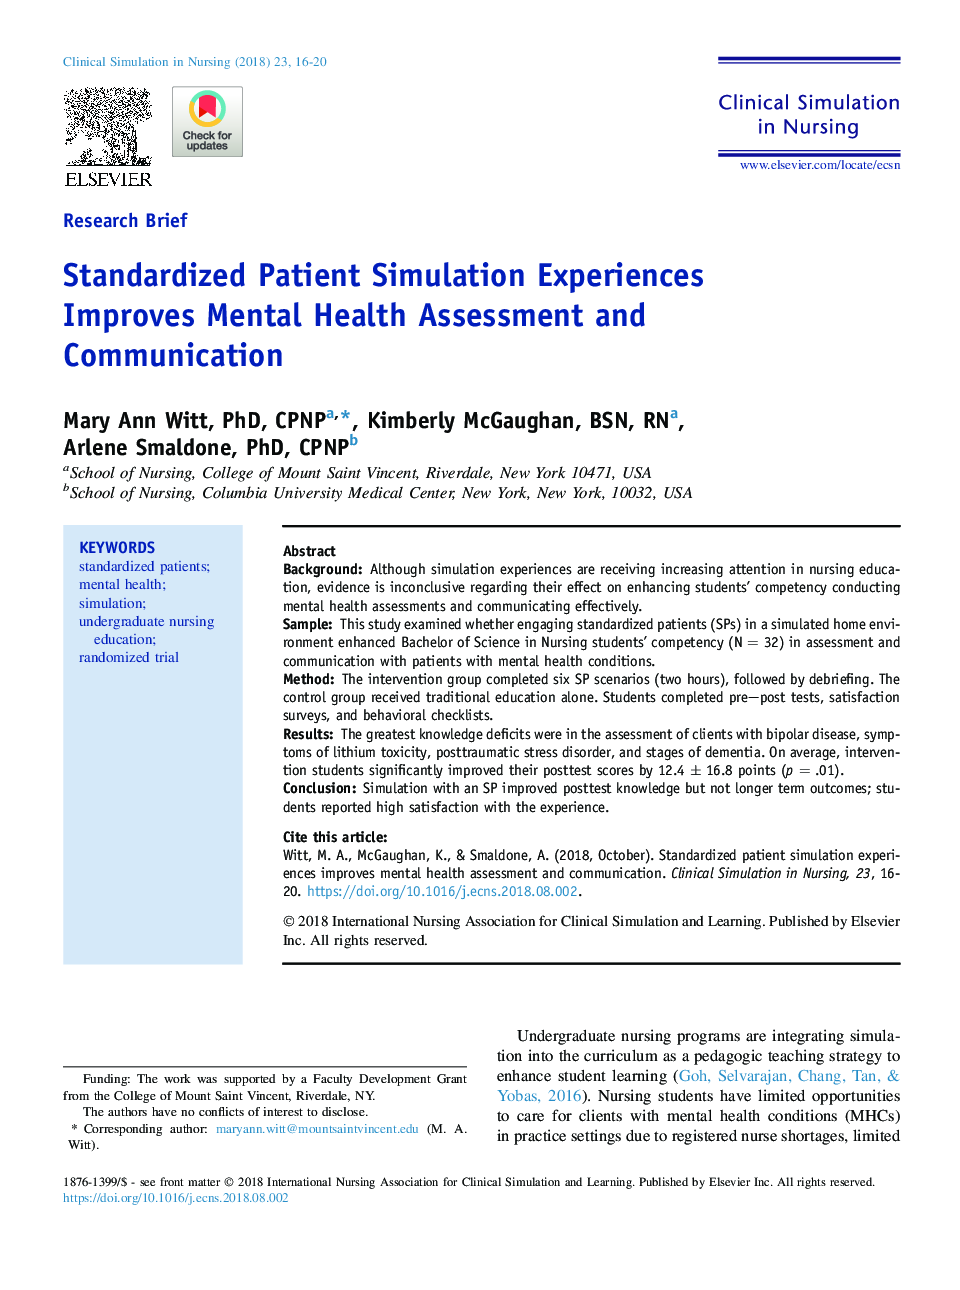 تجربیات شبیه سازی بیمار استاندارد، ارزیابی سلامت روانی و ارتباطات را بهبود می بخشد